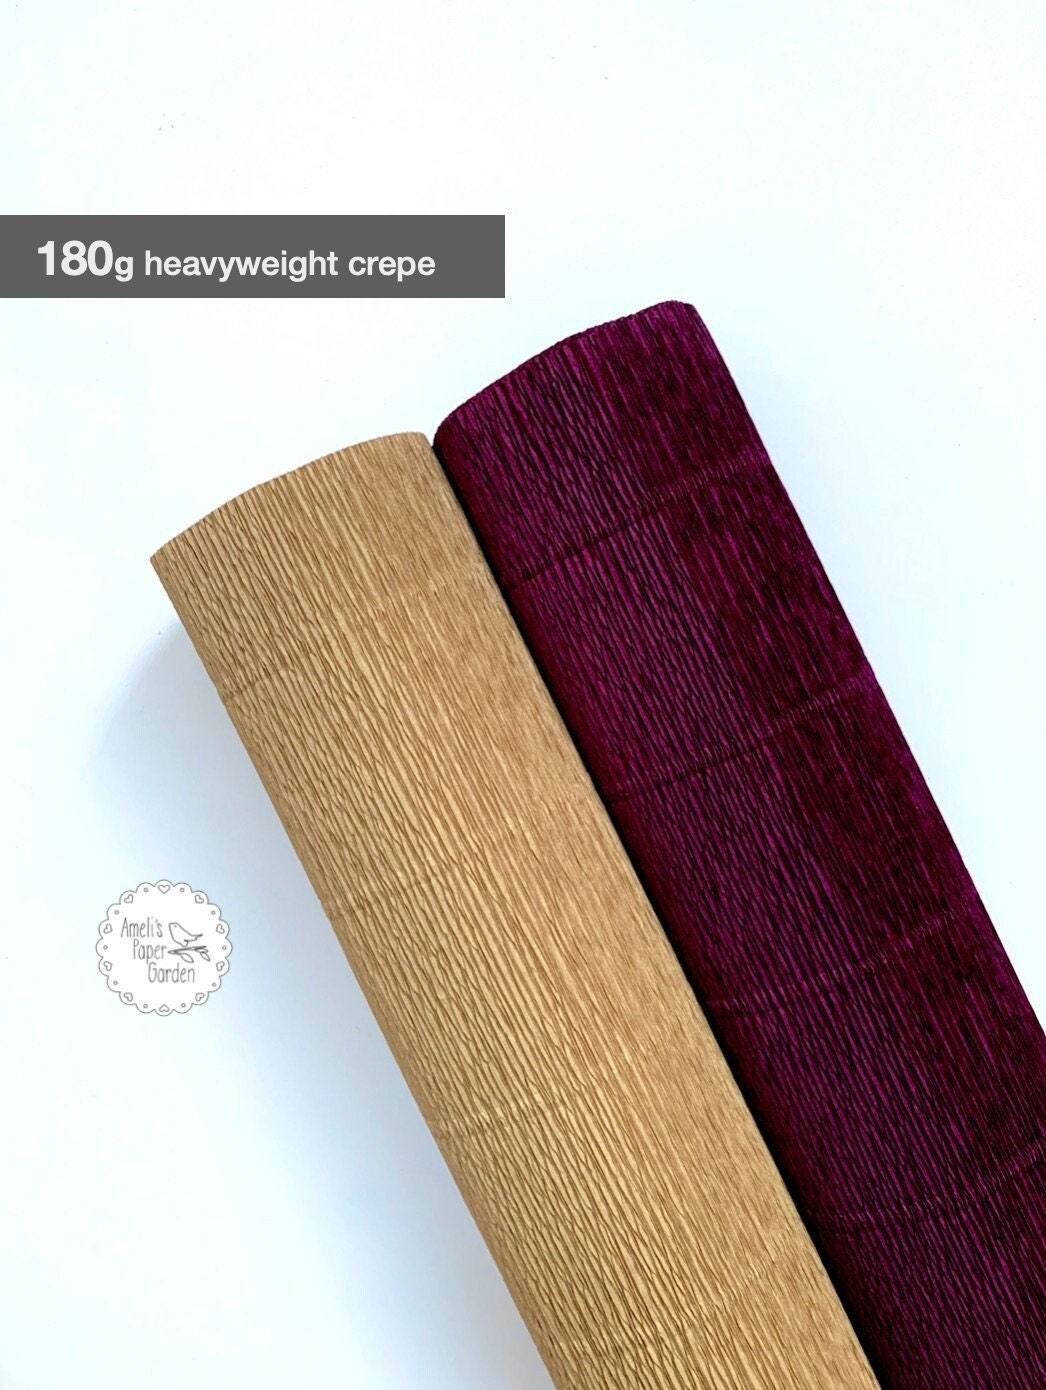 603 Cream Premium Italian Crepe Paper Roll Heavy-Weight 180 gram 